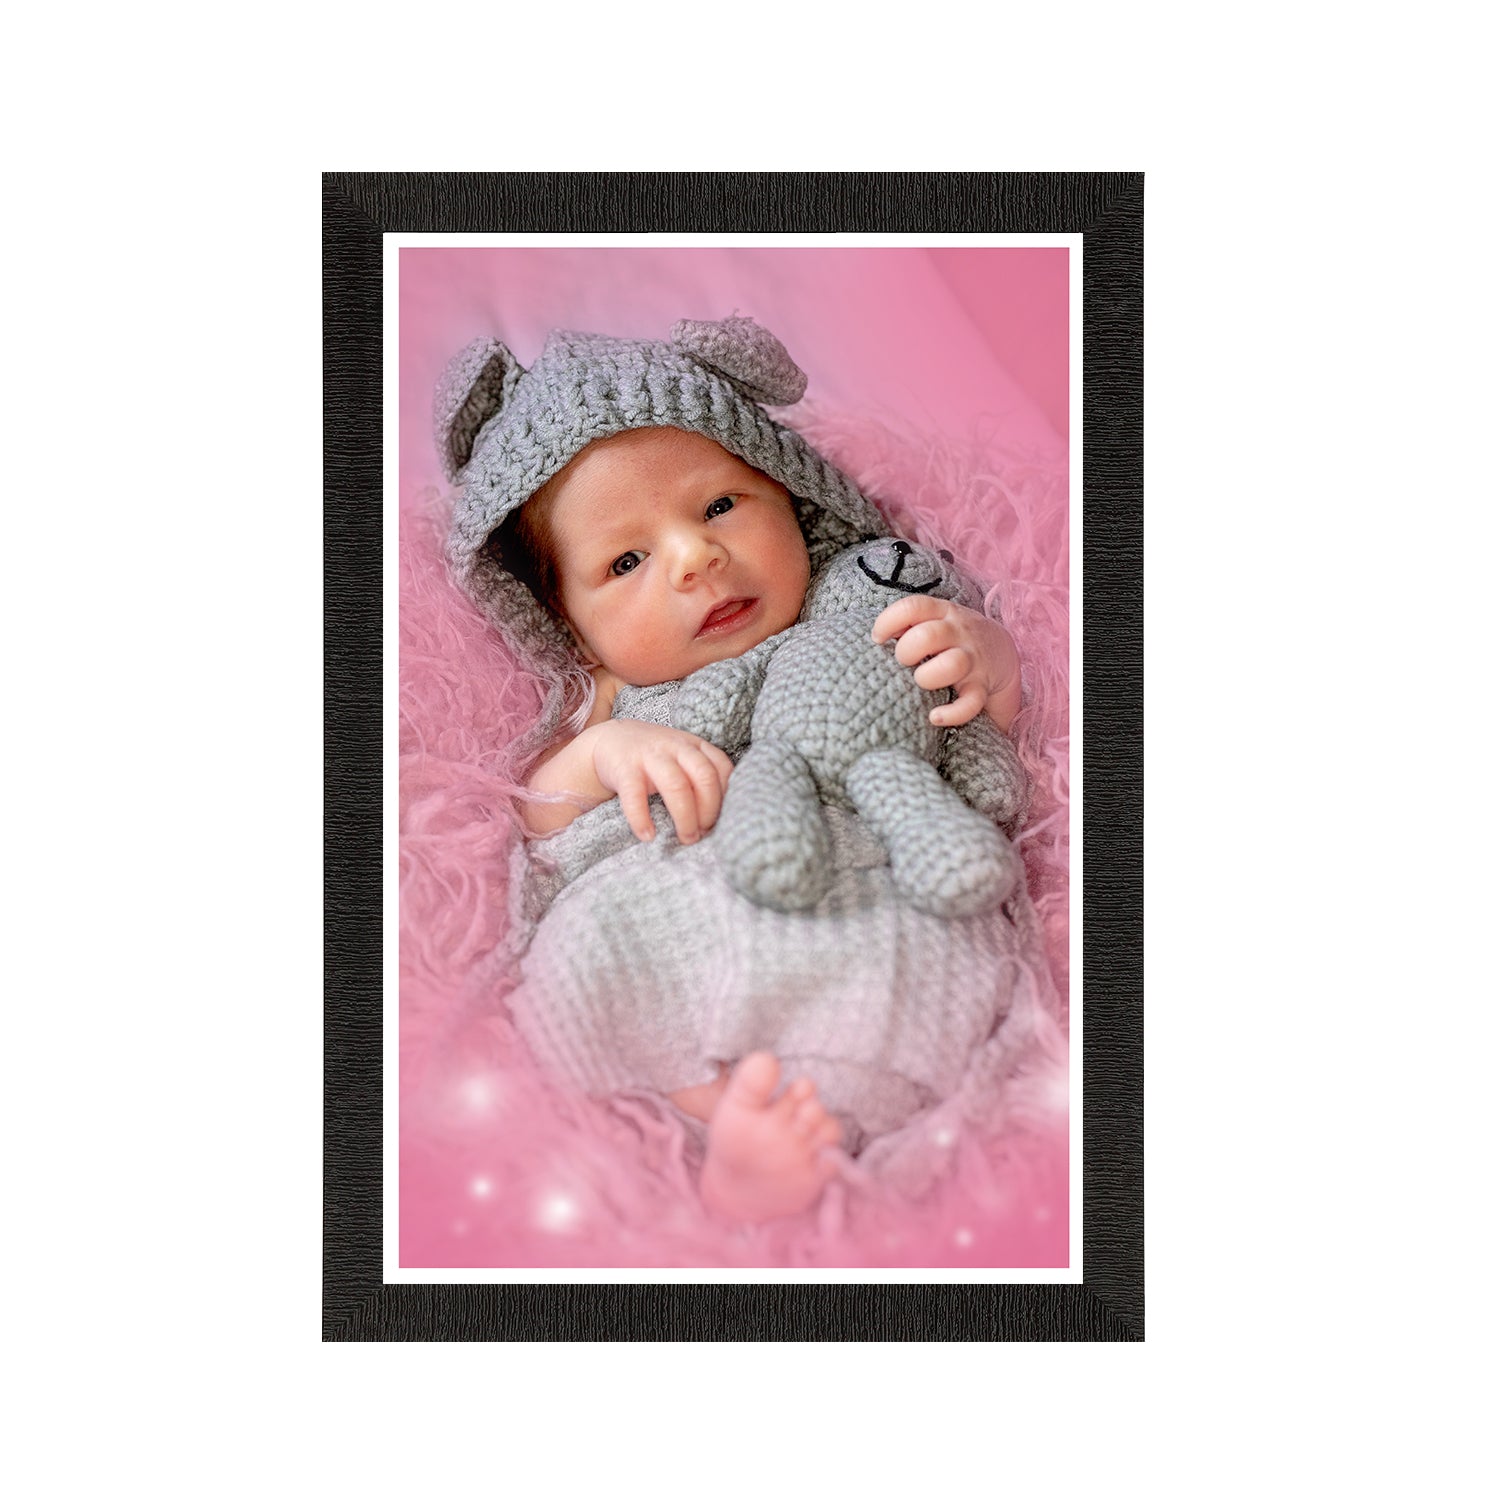 Cute Baby Painting Digital Printed Wall Art